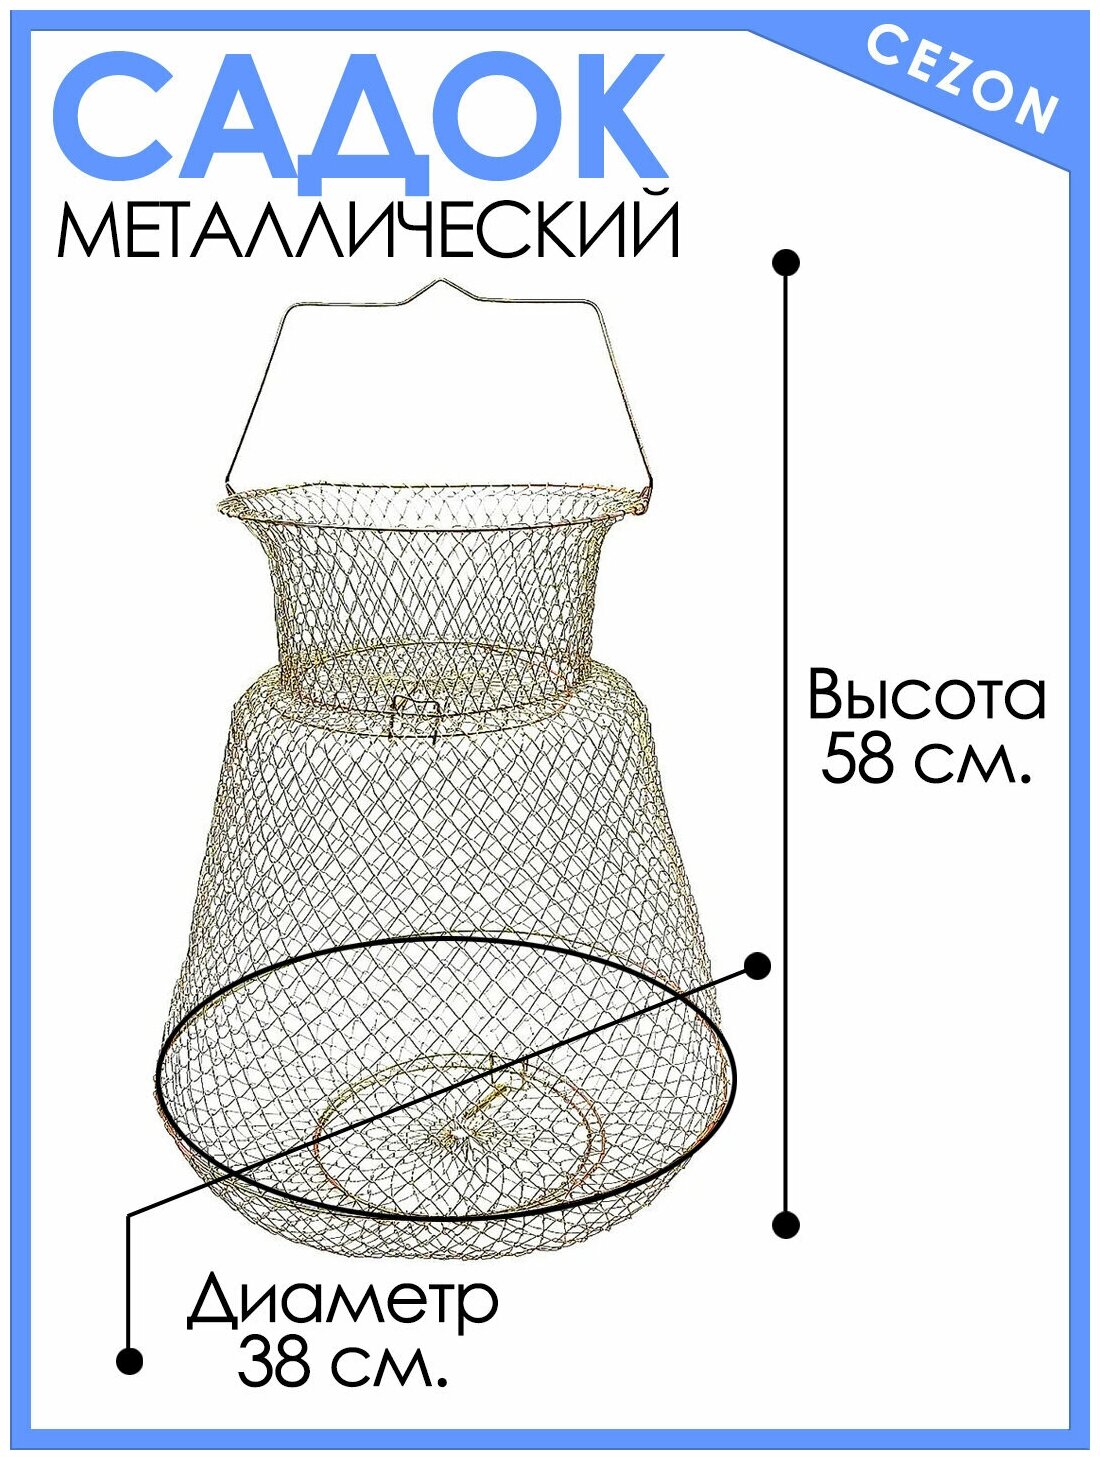 Садок рыболовный металлический для летней рыбалки длина 58 см диаметр 38 см.